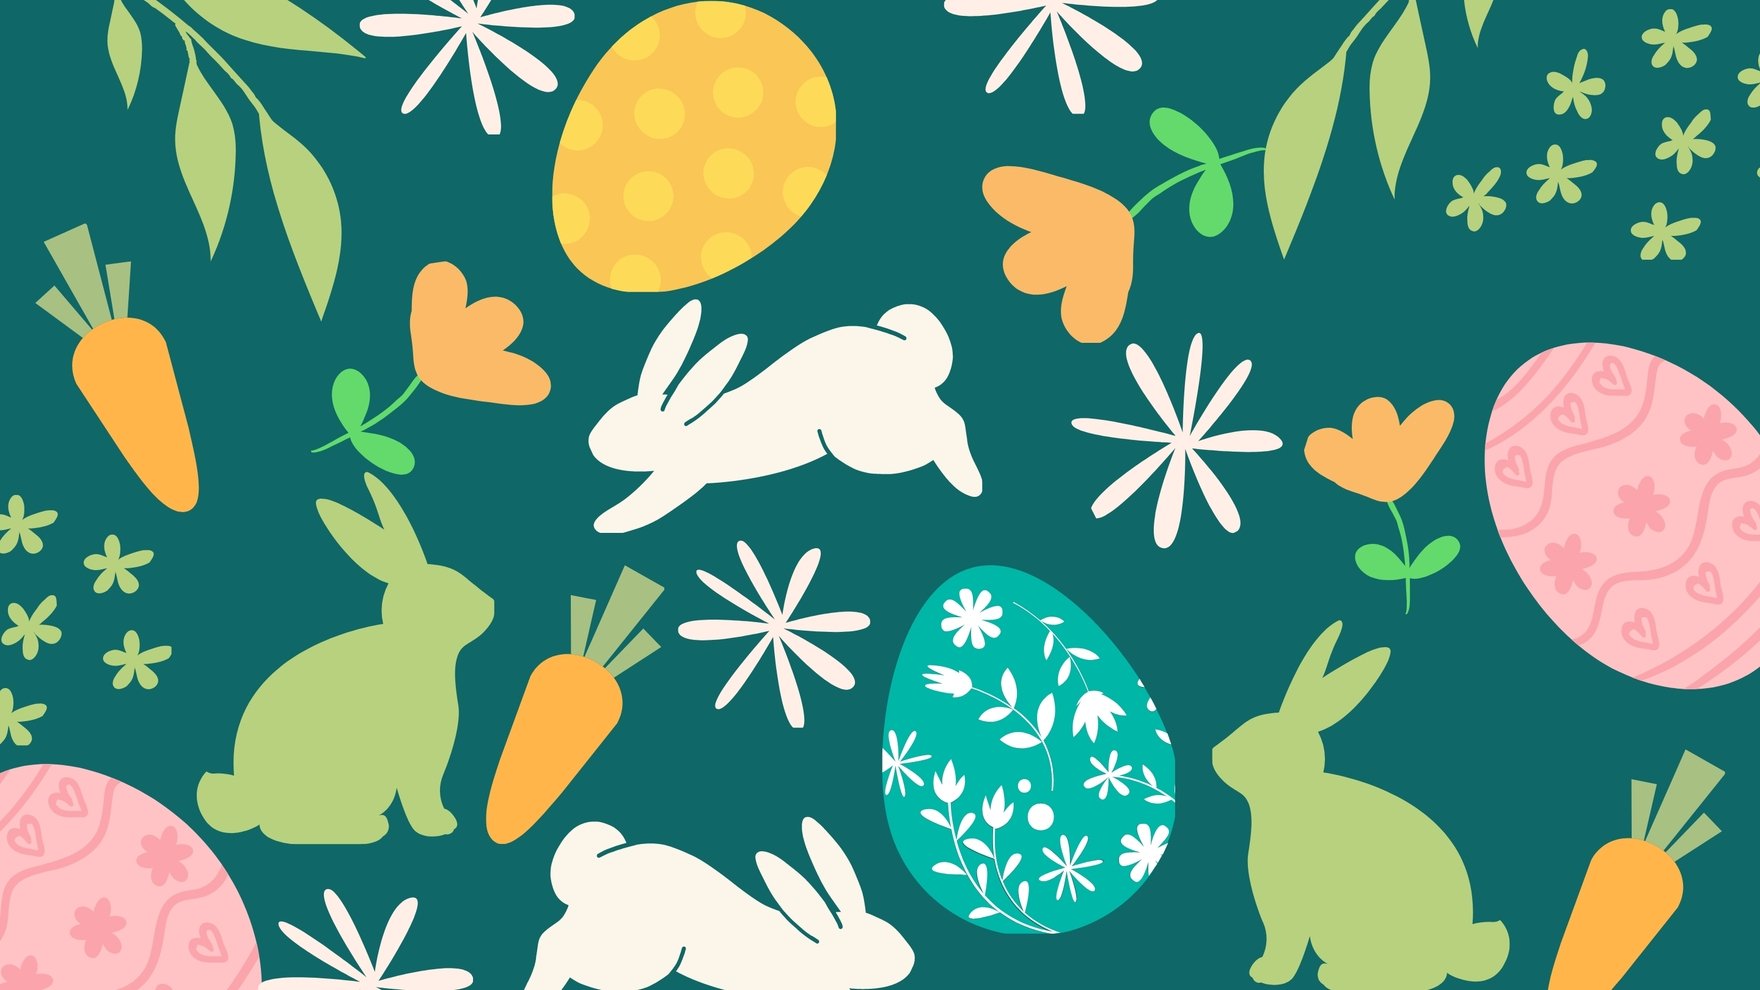 Easter Pattern Background in PDF, Illustrator, PSD, EPS, SVG, JPG, PNG